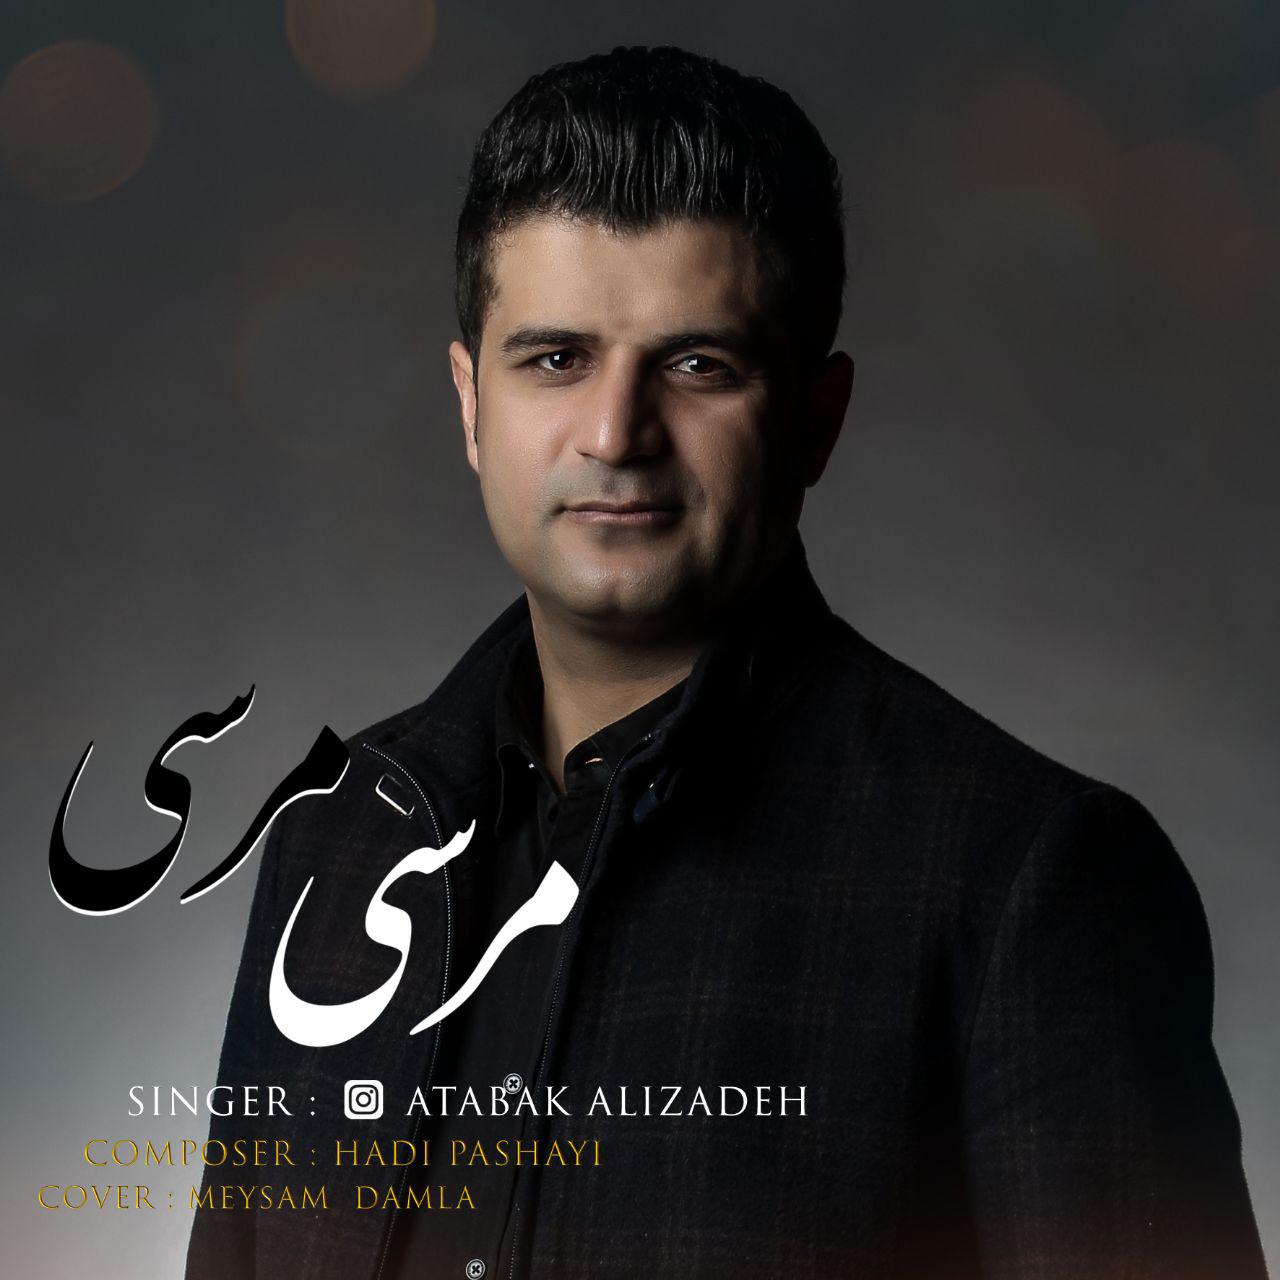  دانلود آهنگ جدید اتابک علیزاده - مرسی مرسی | Download New Music By Atabak Alizadeh - Mersi Mersi